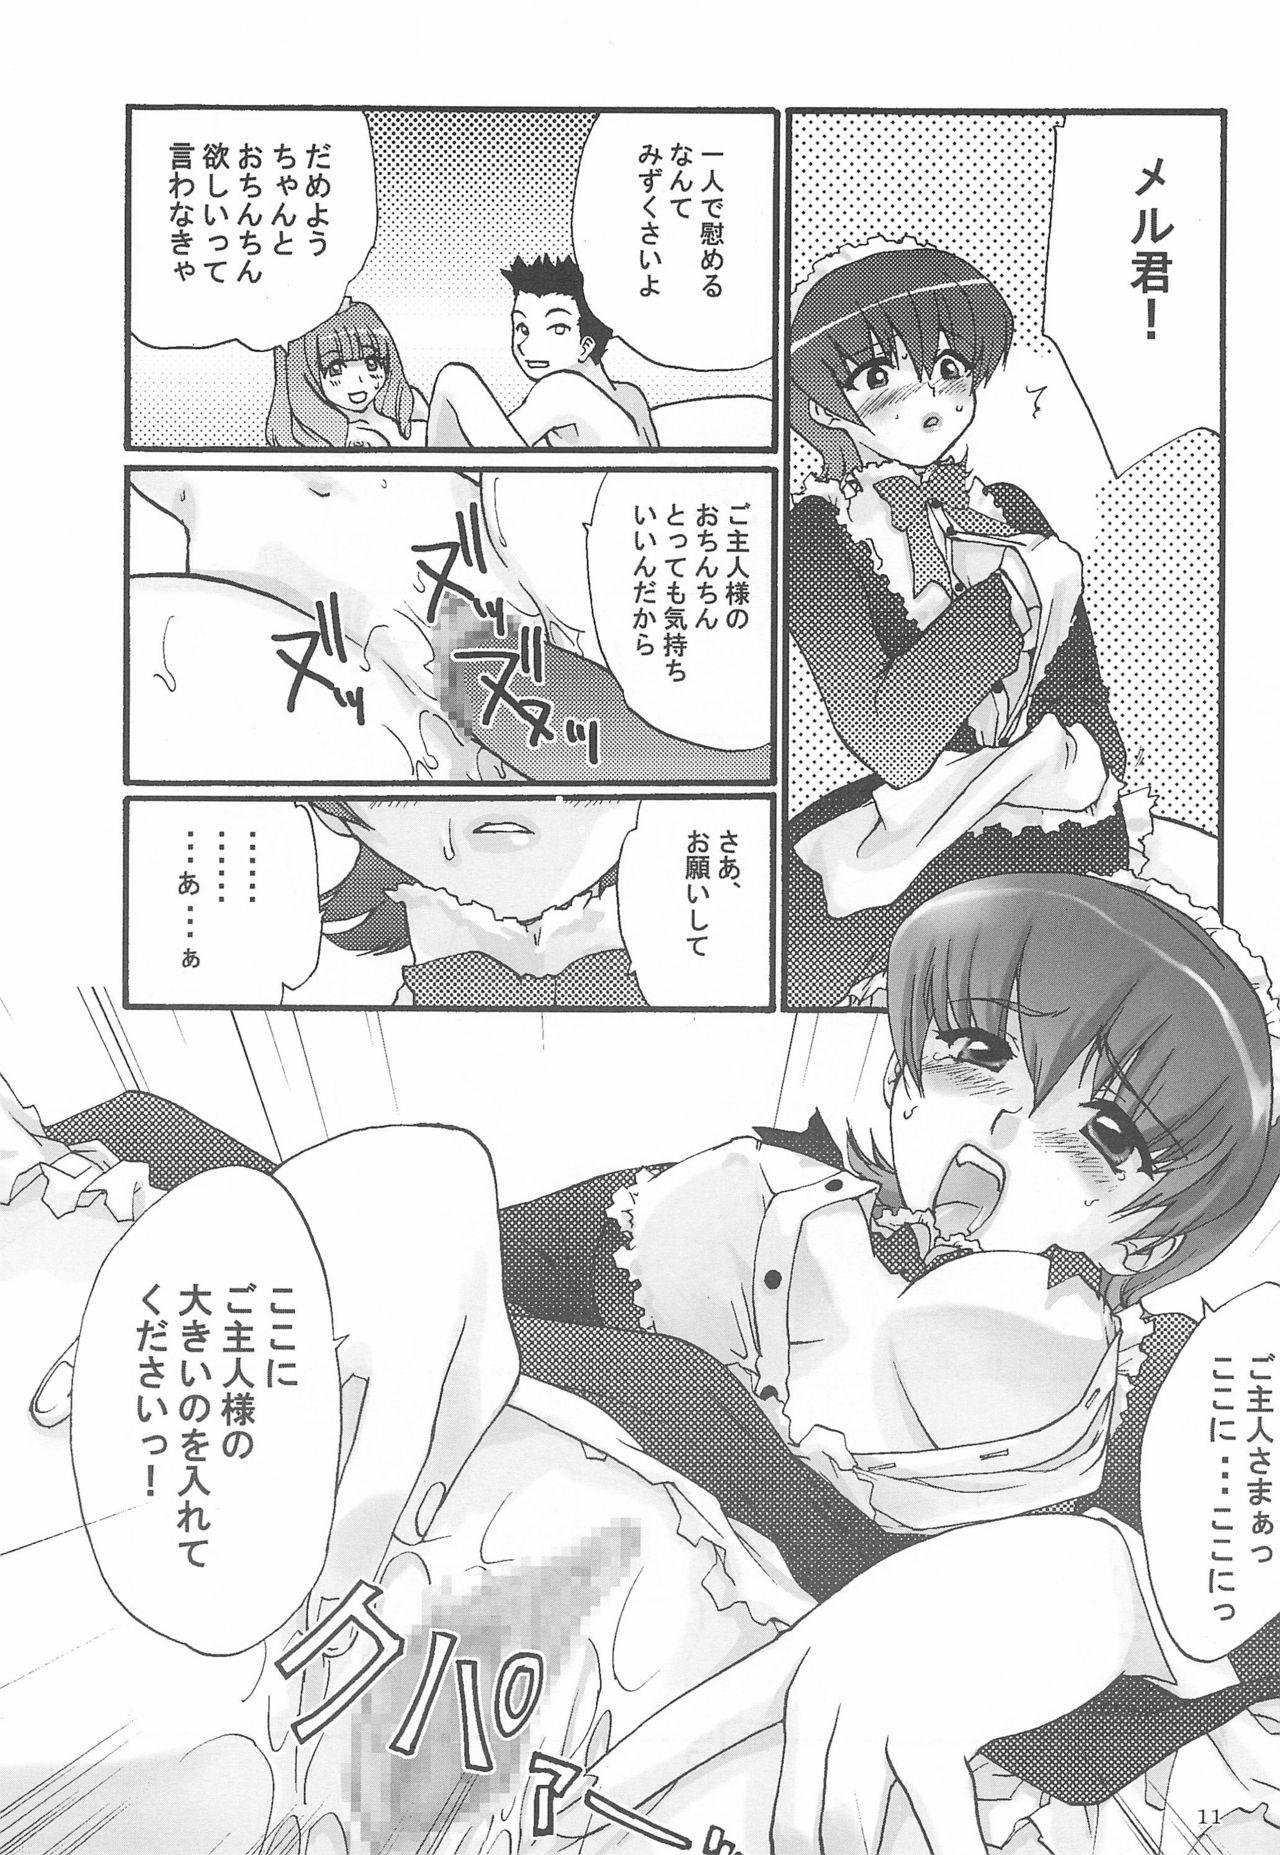 Gaydudes Alleluia - Sakura taisen | sakura wars Mallu - Page 13